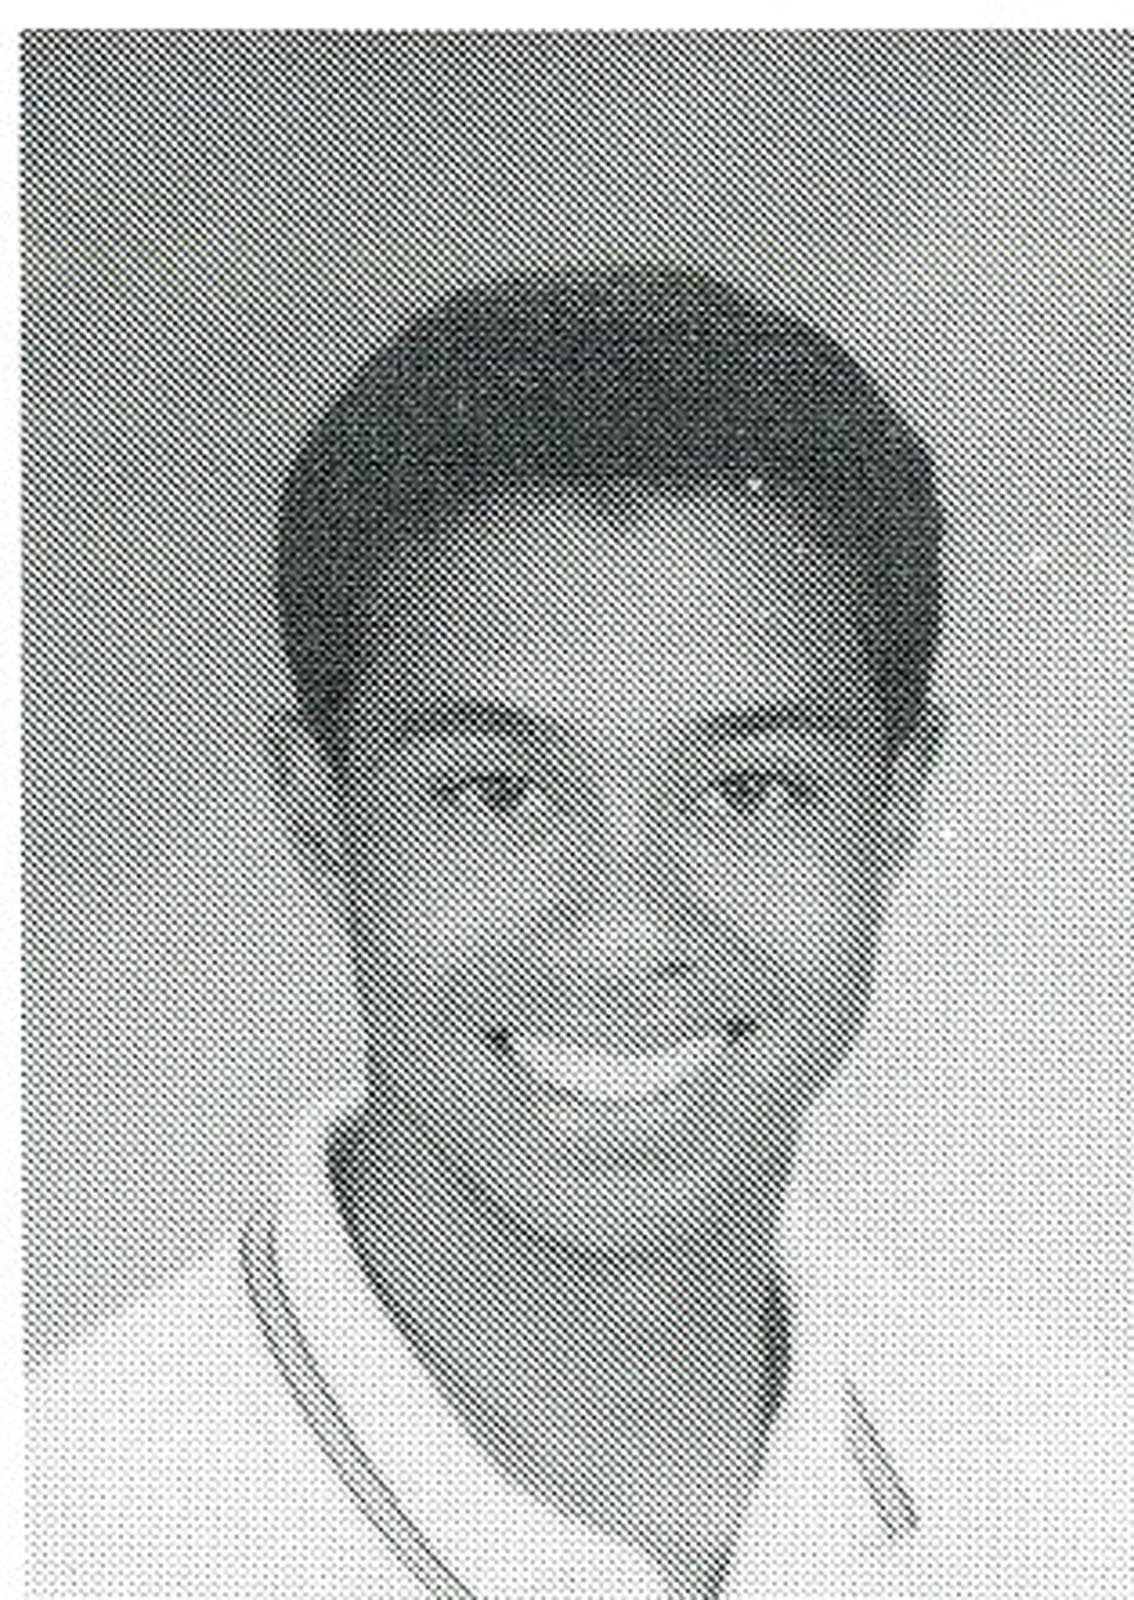 - 1993 Tiger Woods High School Yearbook